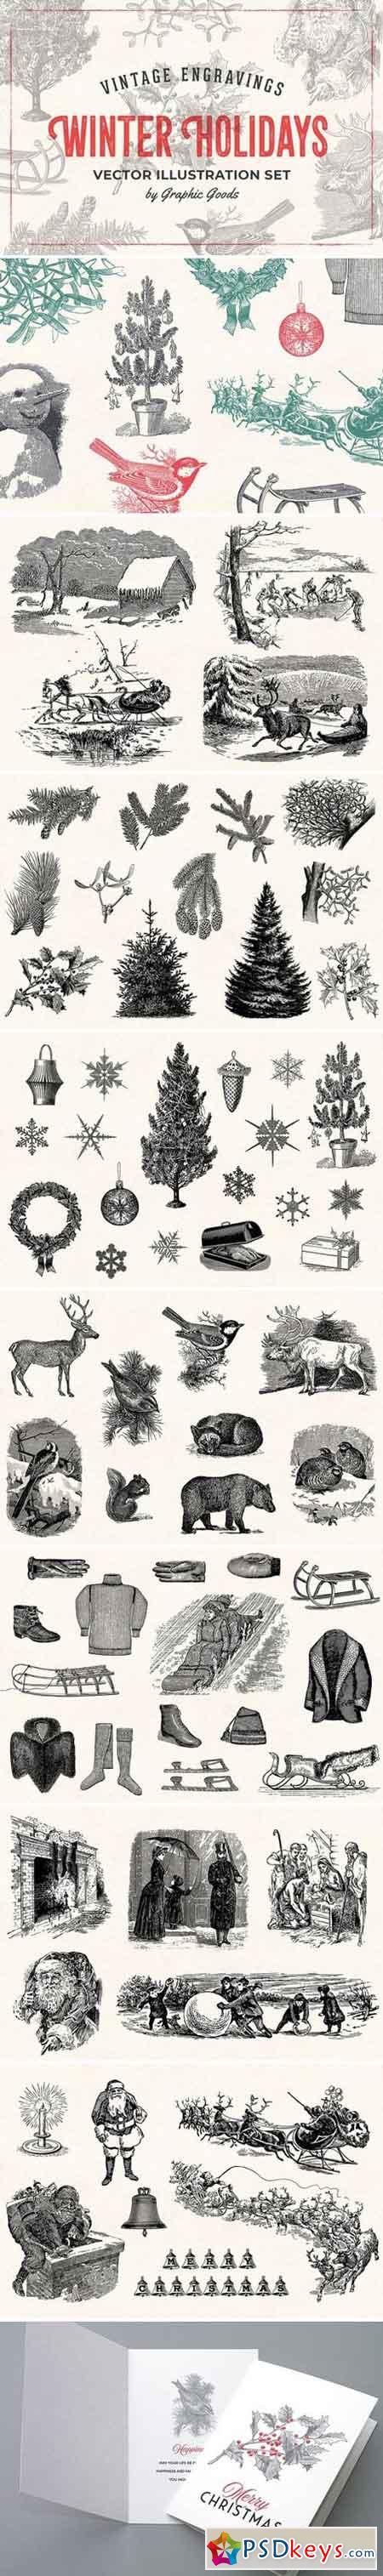 Winter Holidays - Vintage Engravings 2057291